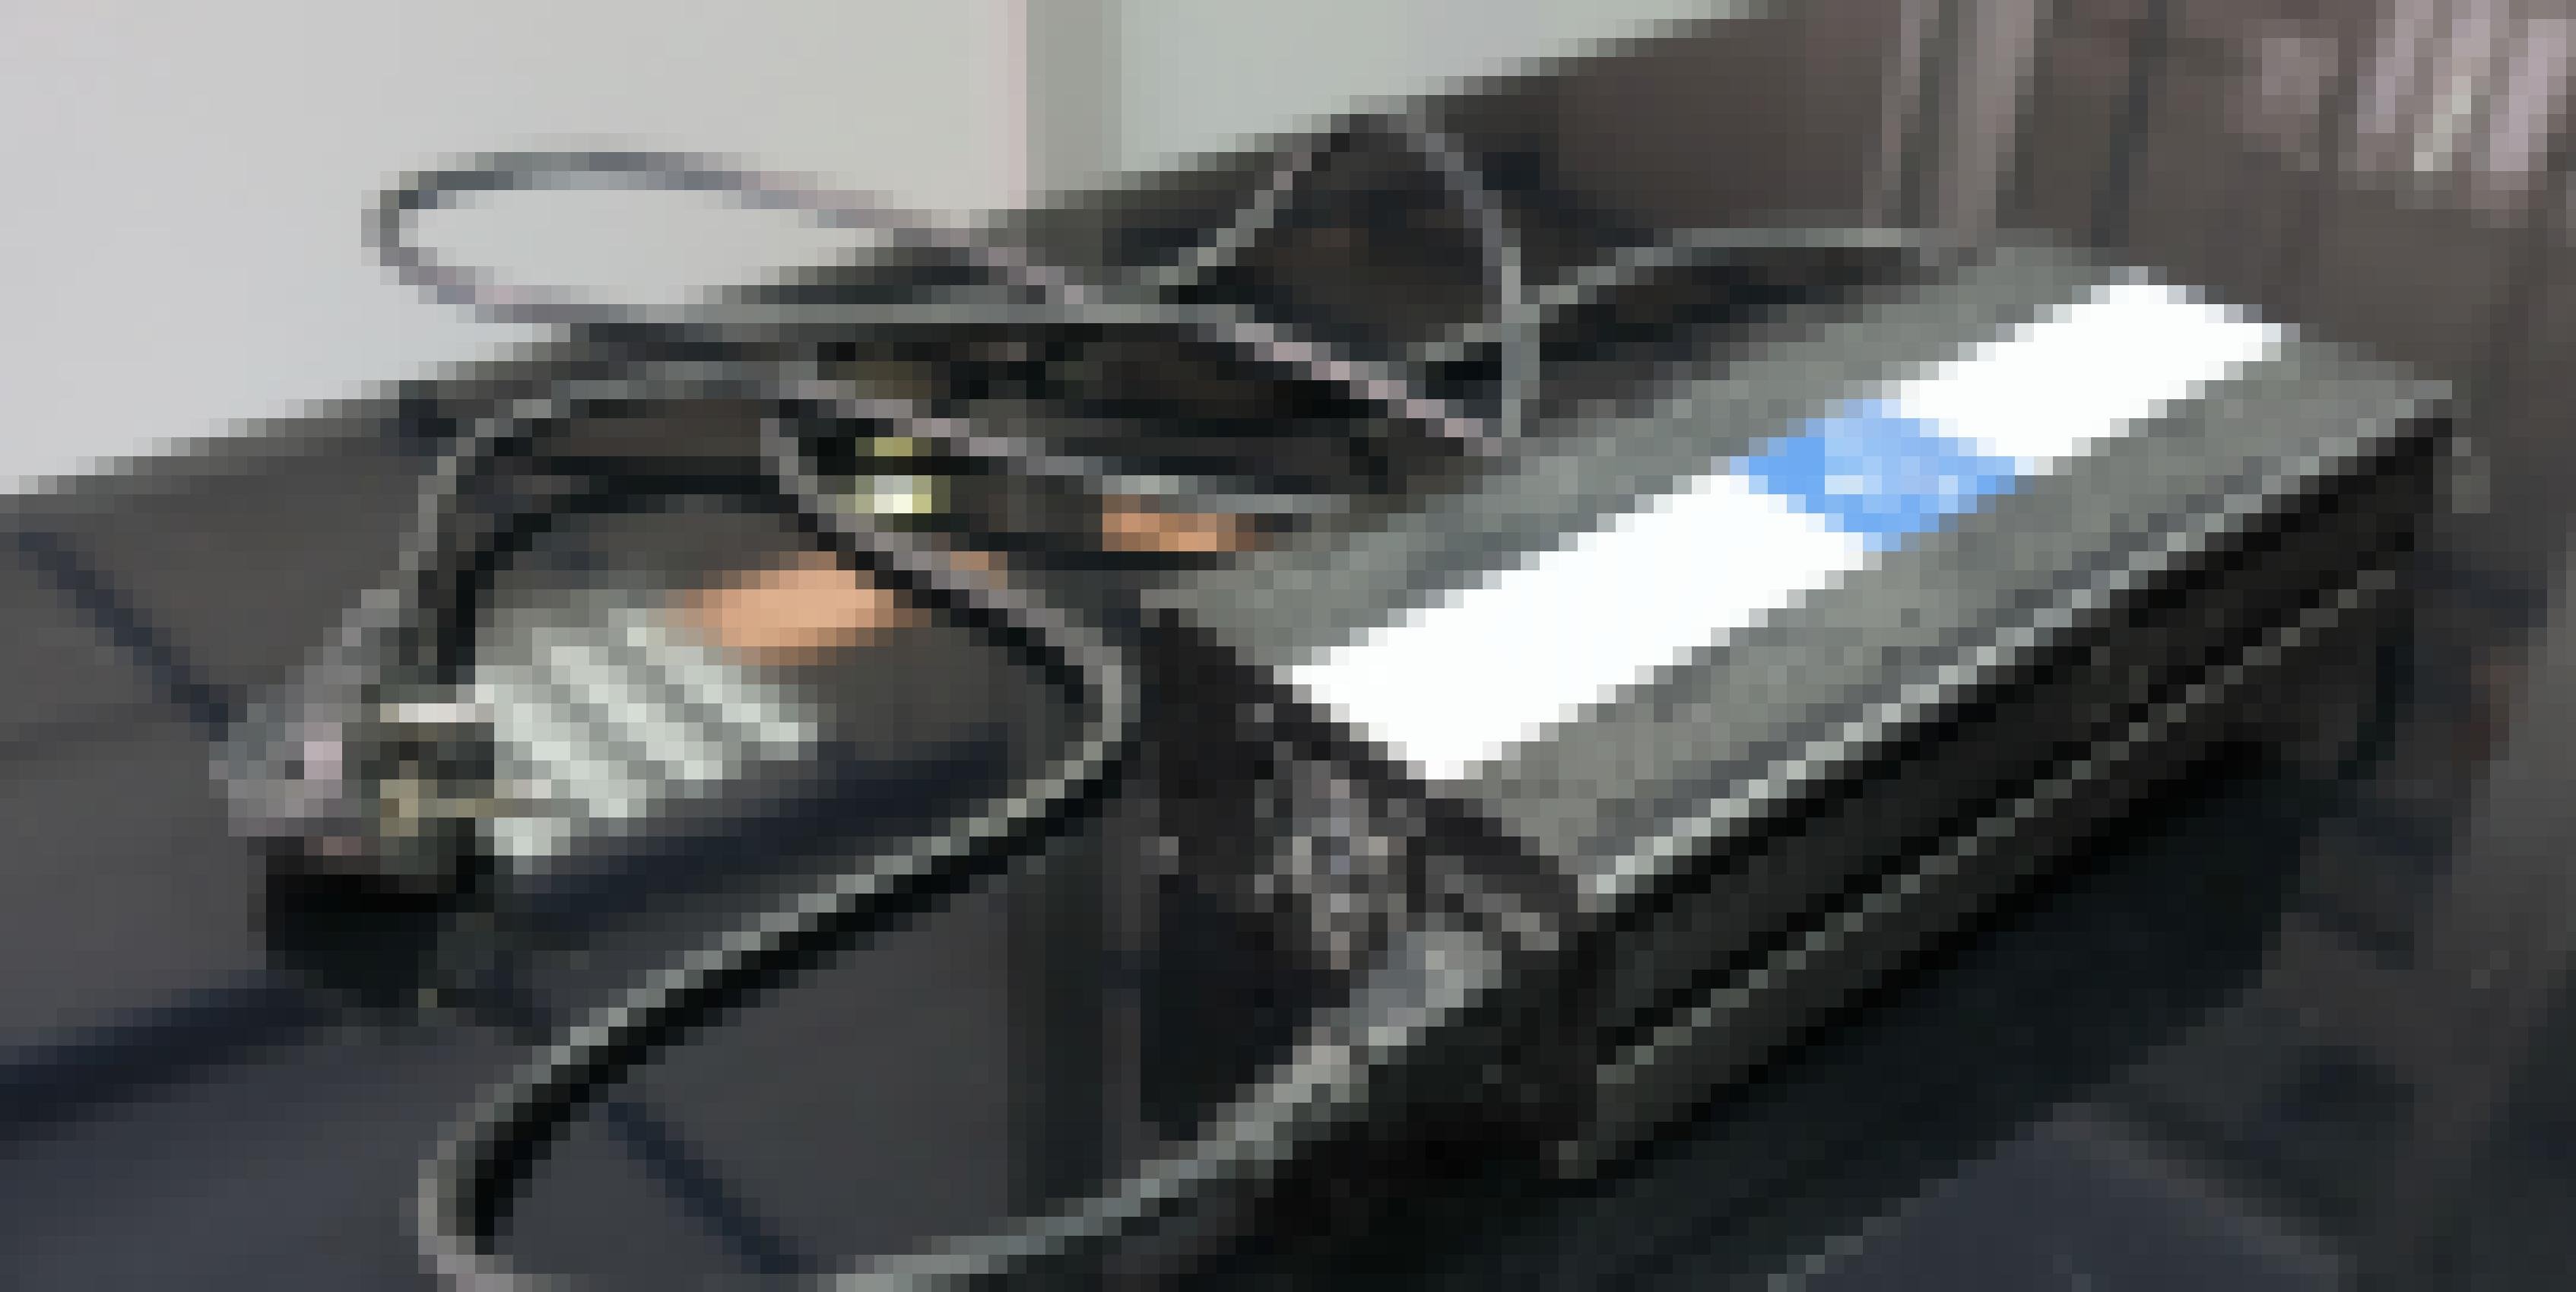 Auf einem Tisch liegt ein Ladegerät, dass an alte, etwas klobige Ladegeräte von Laptops erinnert.